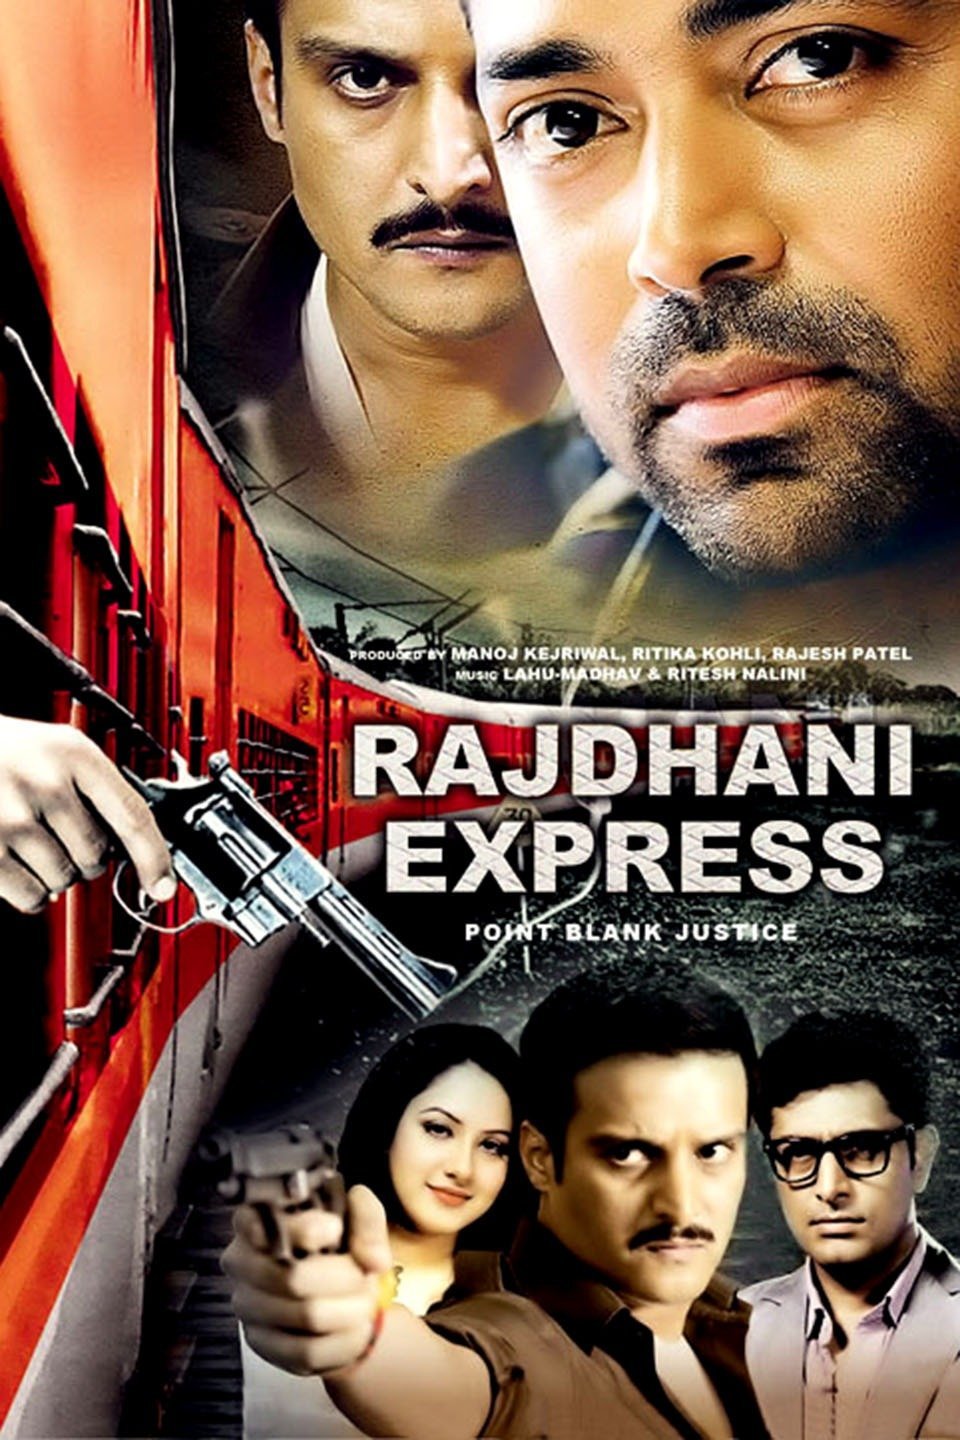 Hindi poster of the movie Rajdhani Express